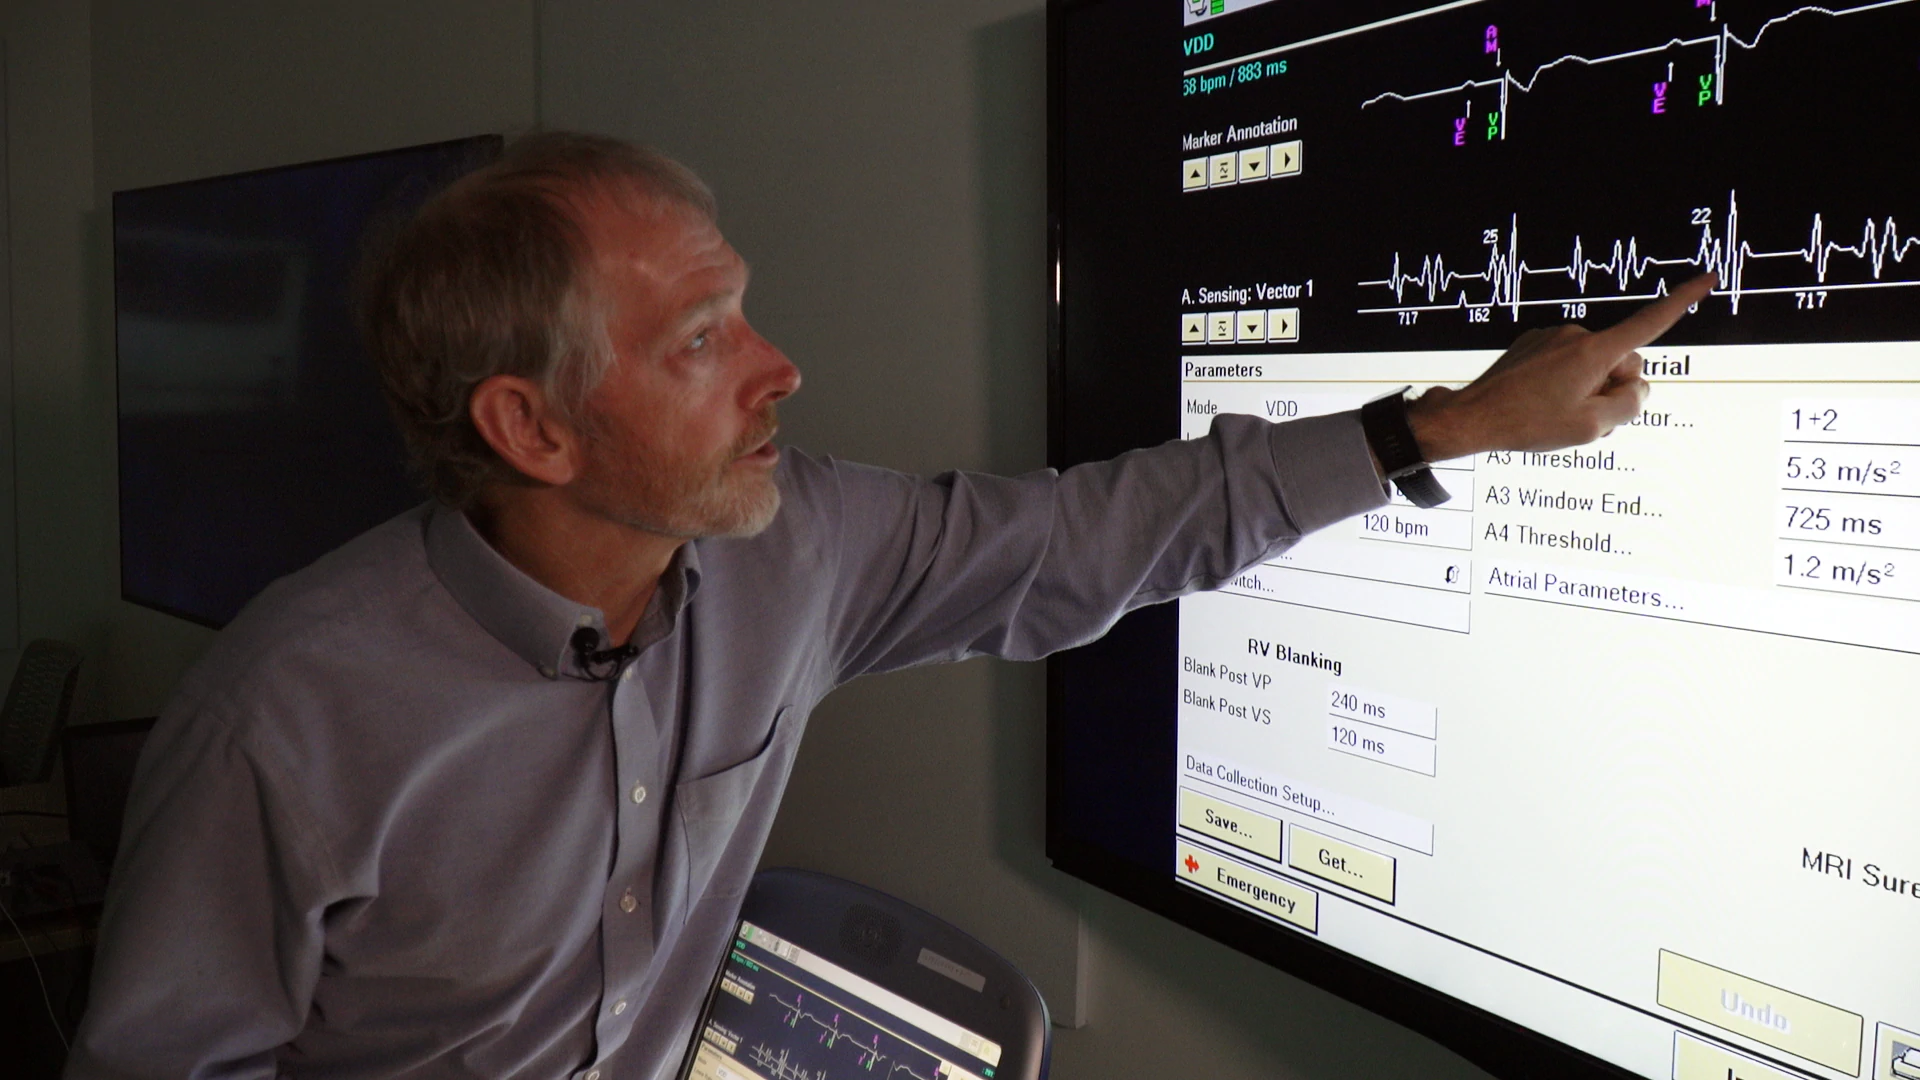 Medtronic Distinguished Scientist Todd Sheldon explains how Micra AV works.